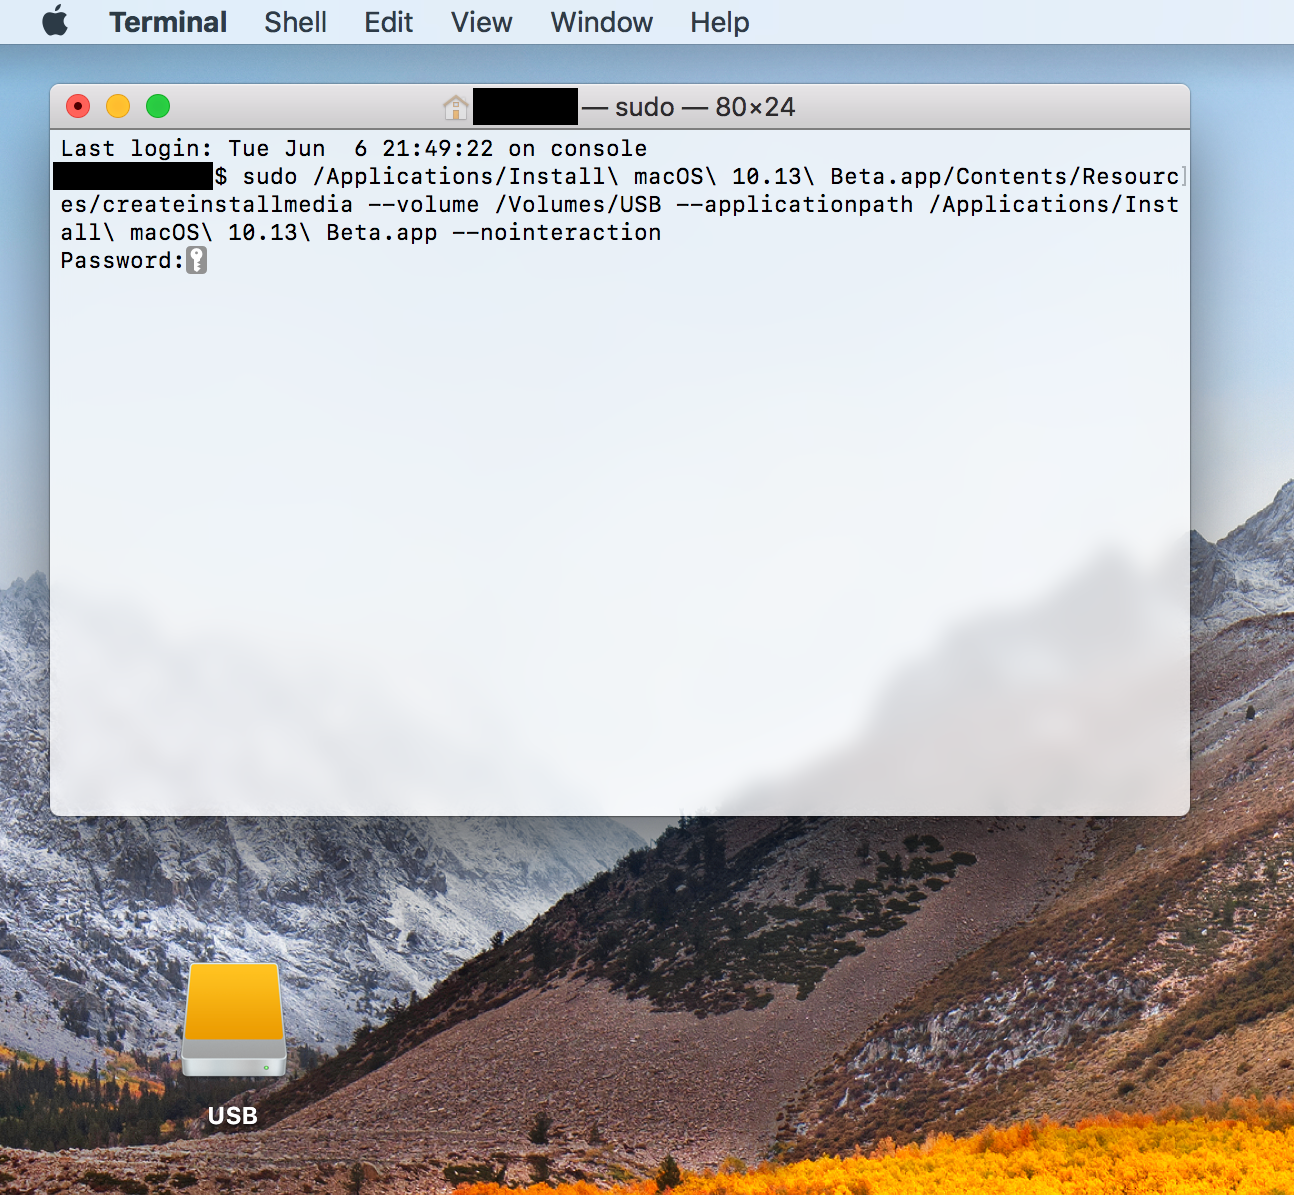 create a boot flash drive for mac os high sierra using windows 10